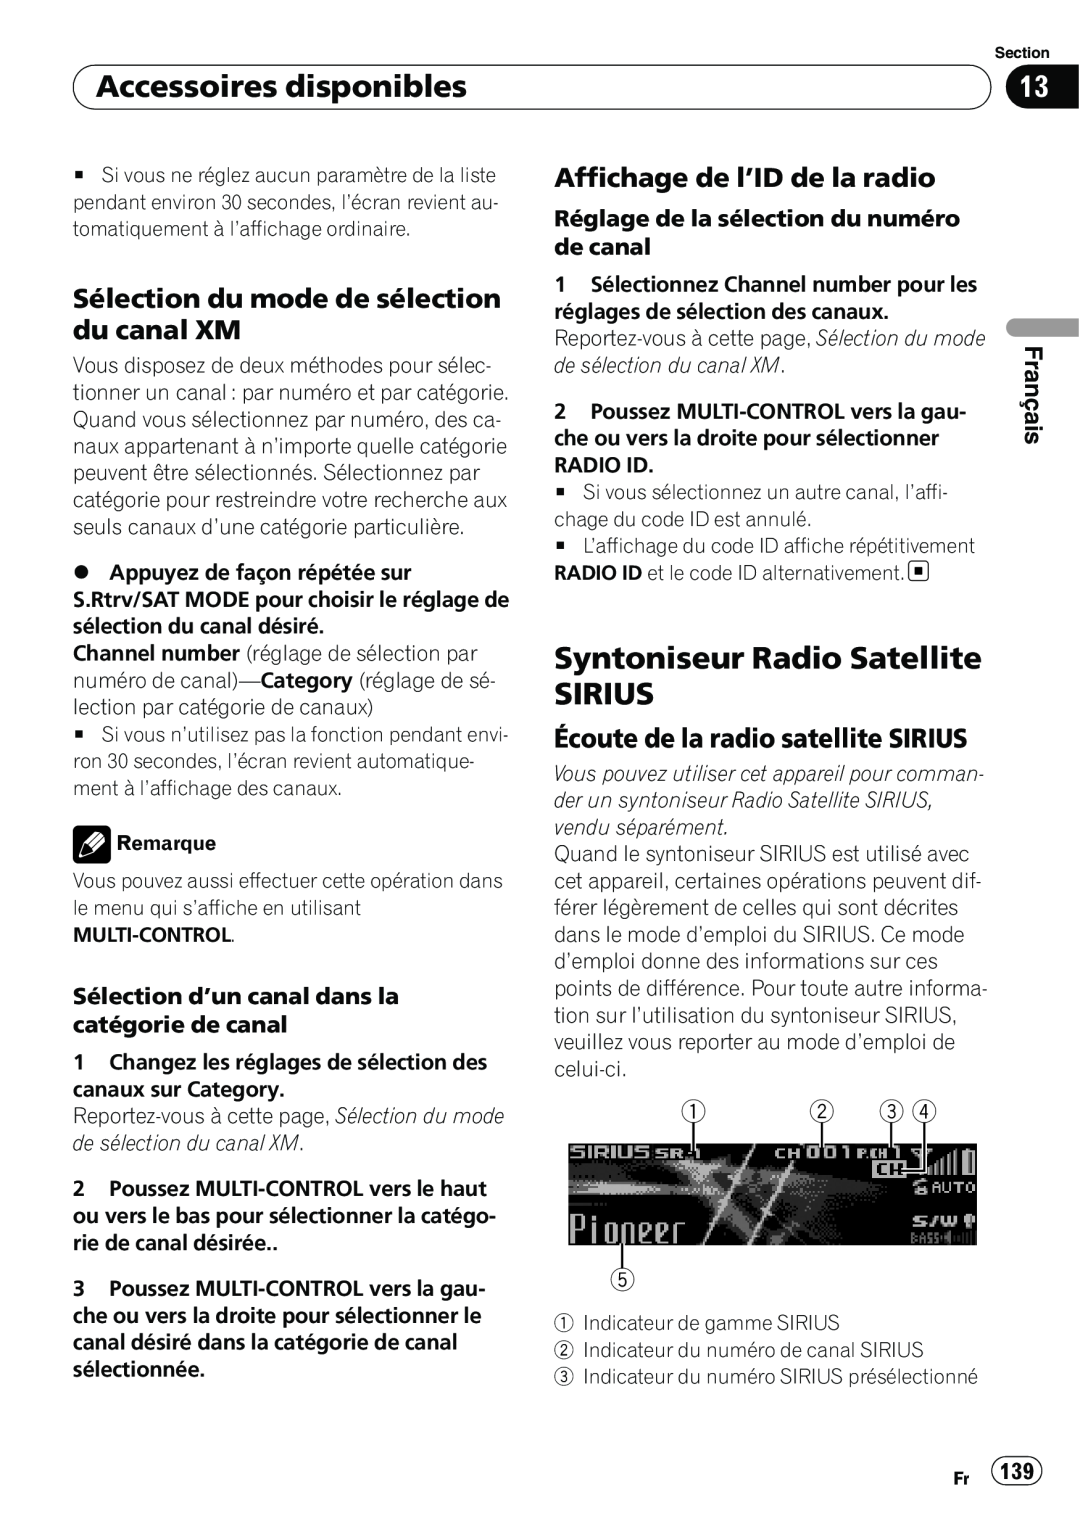 Pioneer DEH-P7100BT Syntoniseur Radio Satellite SIRIUS, Sélection du mode de sélection du canal XM, Français 